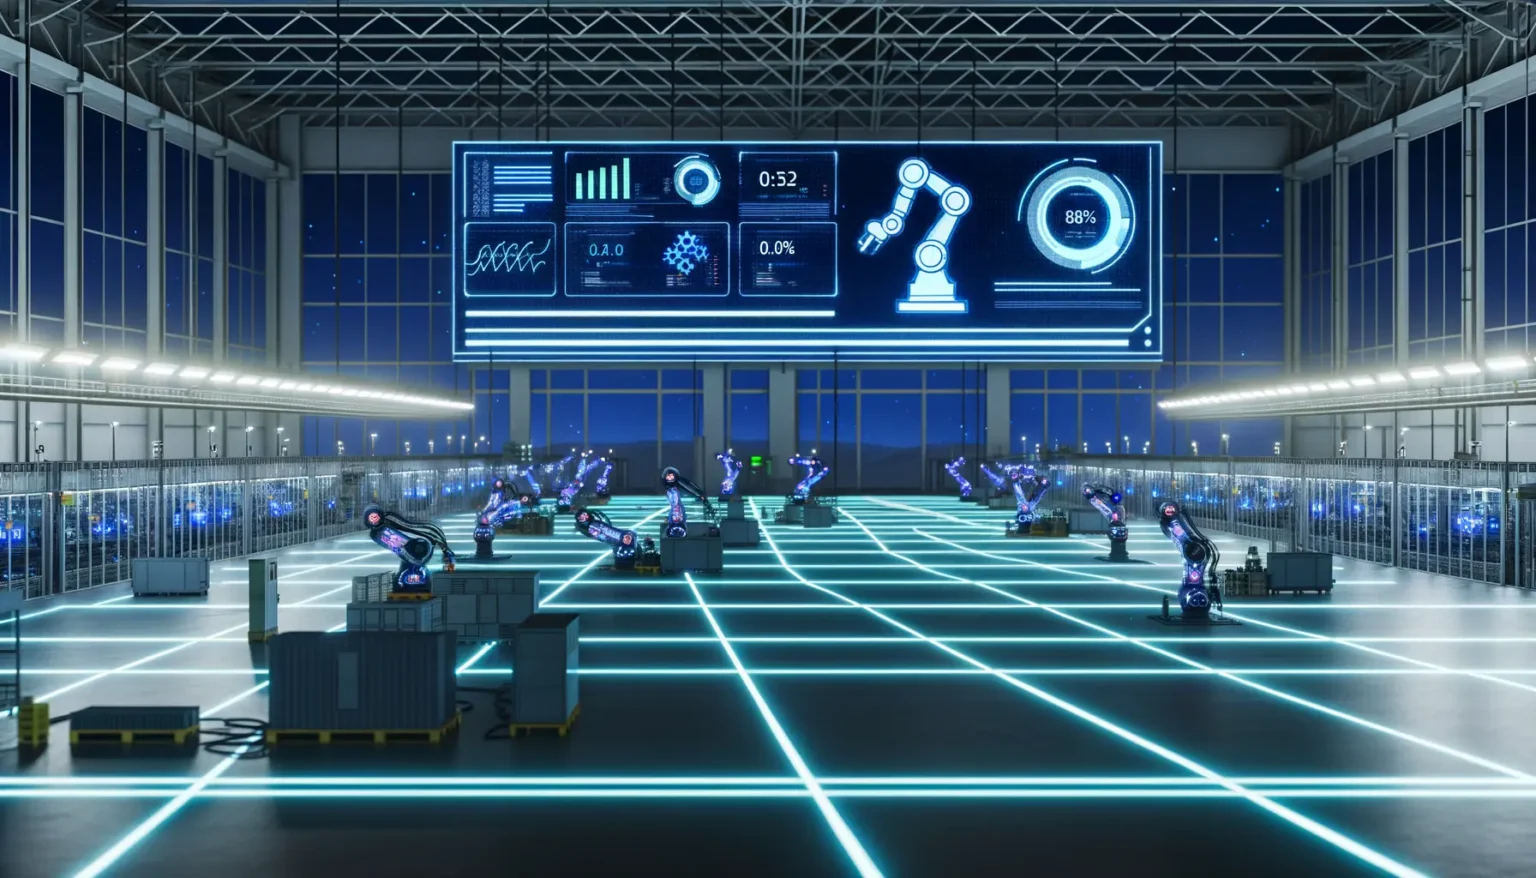 Moderne Fabrikhalle bei Nacht mit futuristischen, automatisierten Robotern, die Aufgaben an Arbeitsstationen ausführen. Leuchtende, neonblaue Linien markieren den Boden, und an der Wand werden digitale Anzeigen mit Diagrammen und Statistiken präsentiert.